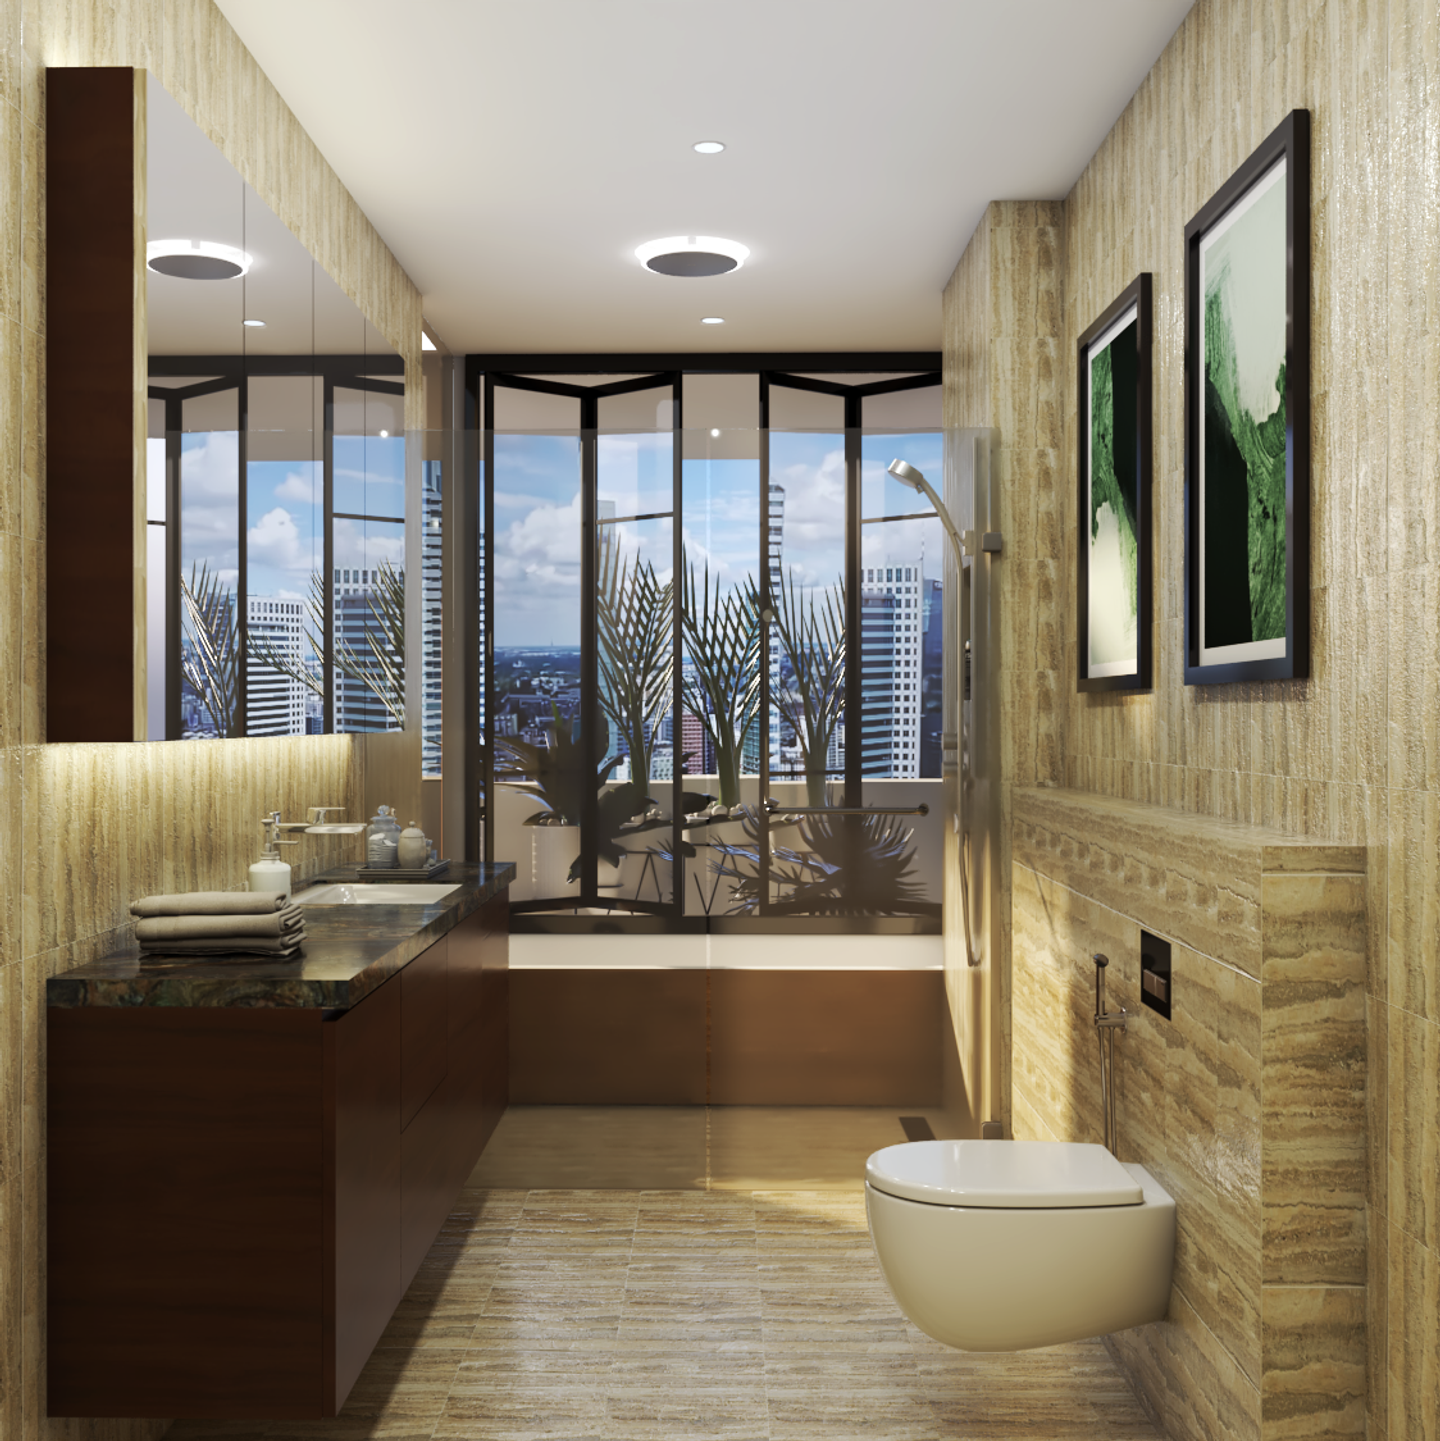 Brown Vanity Large Windows Modern Spacious Bathroom Design - Livspace